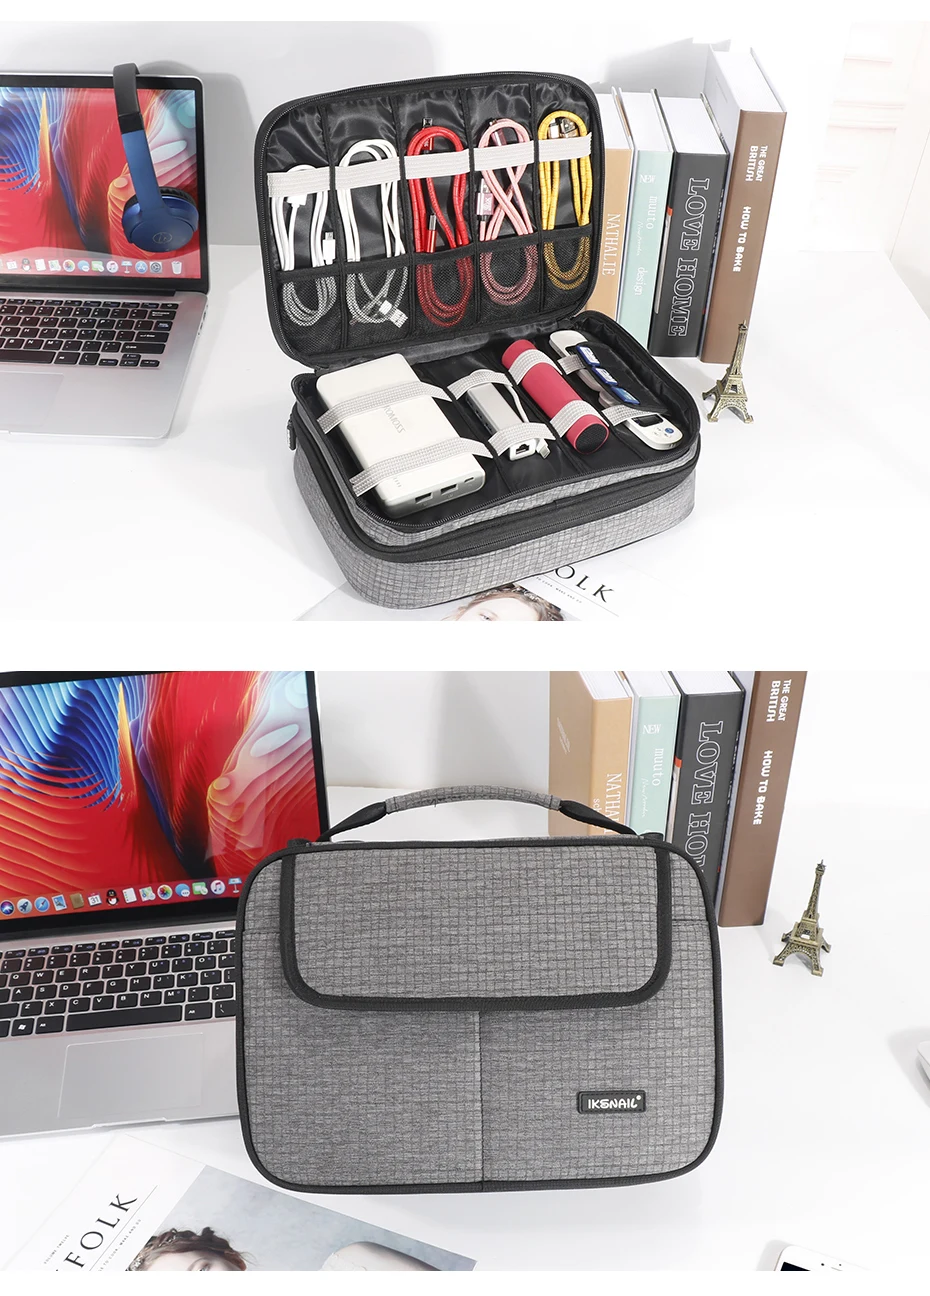 IKSNAIL EVA тканевая водонепроницаемая сумка на плечо, органайзер для iPad, USB кабель для передачи данных, зарядное устройство для наушников, сумка для хранения в дороге, сумки для цифровых гаджетов